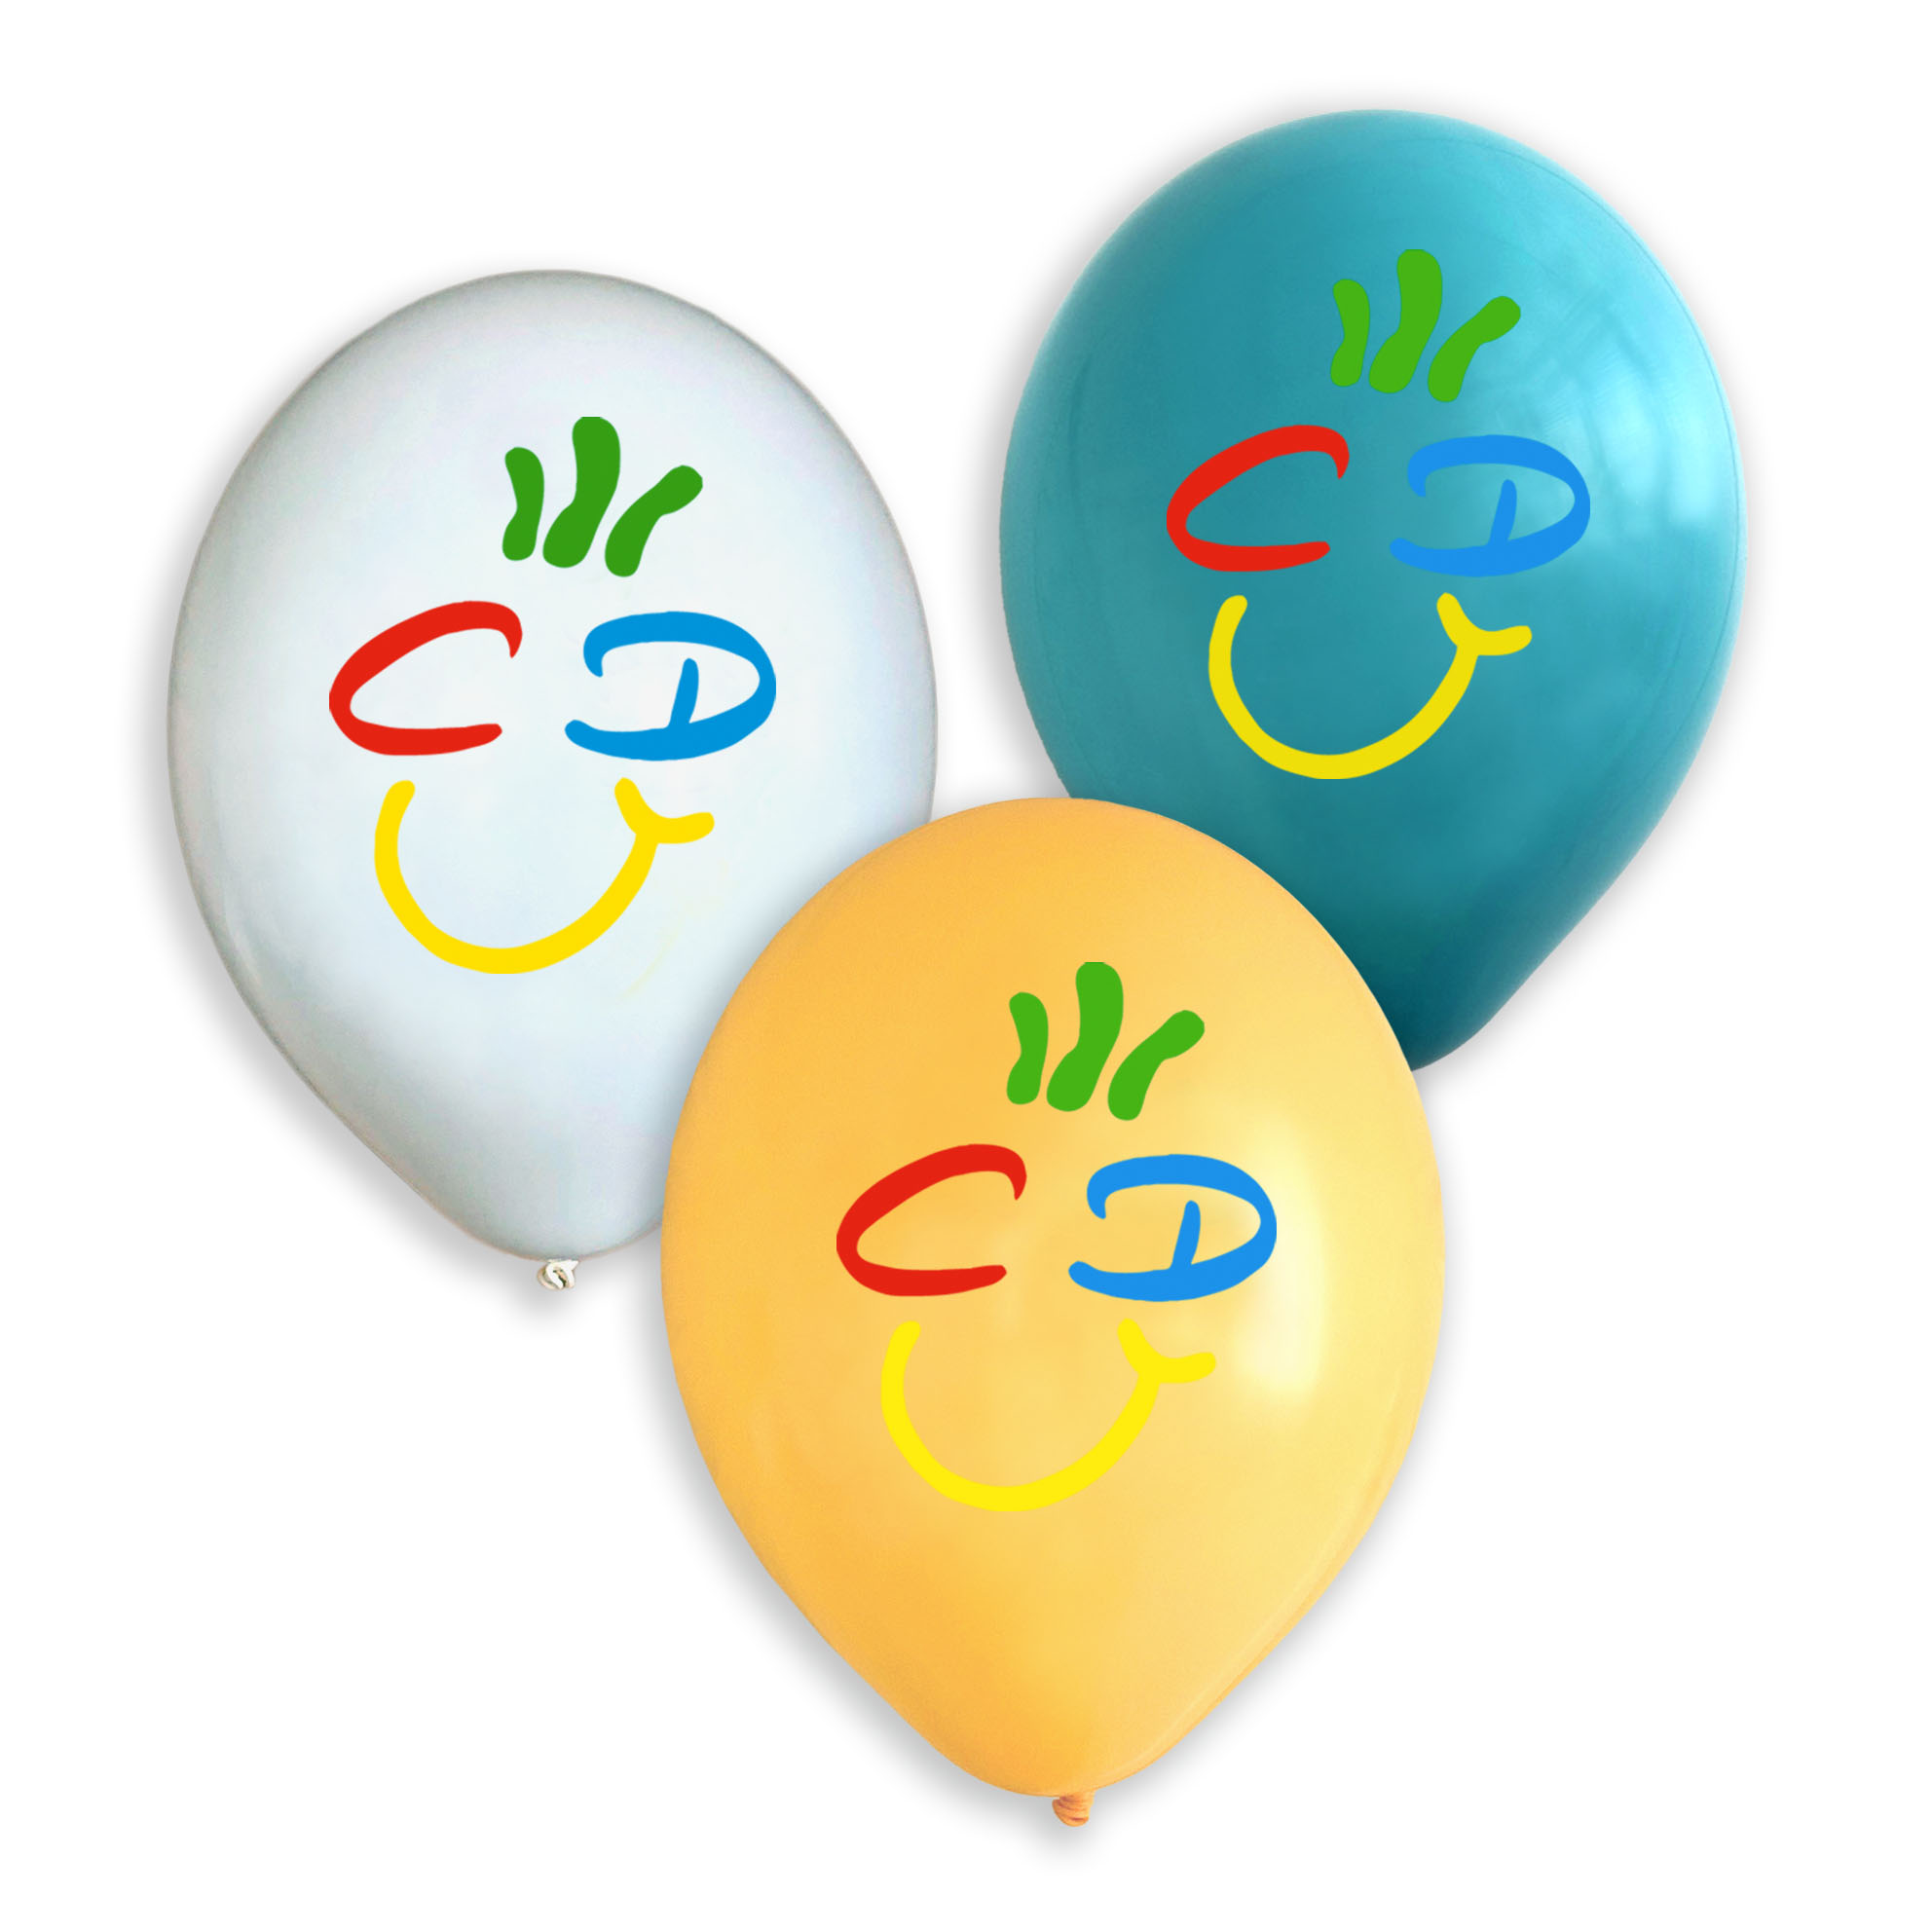 CDU-Smilie Luftballons  in Cadenabbia-Türkis, Weiß und Orangegelb